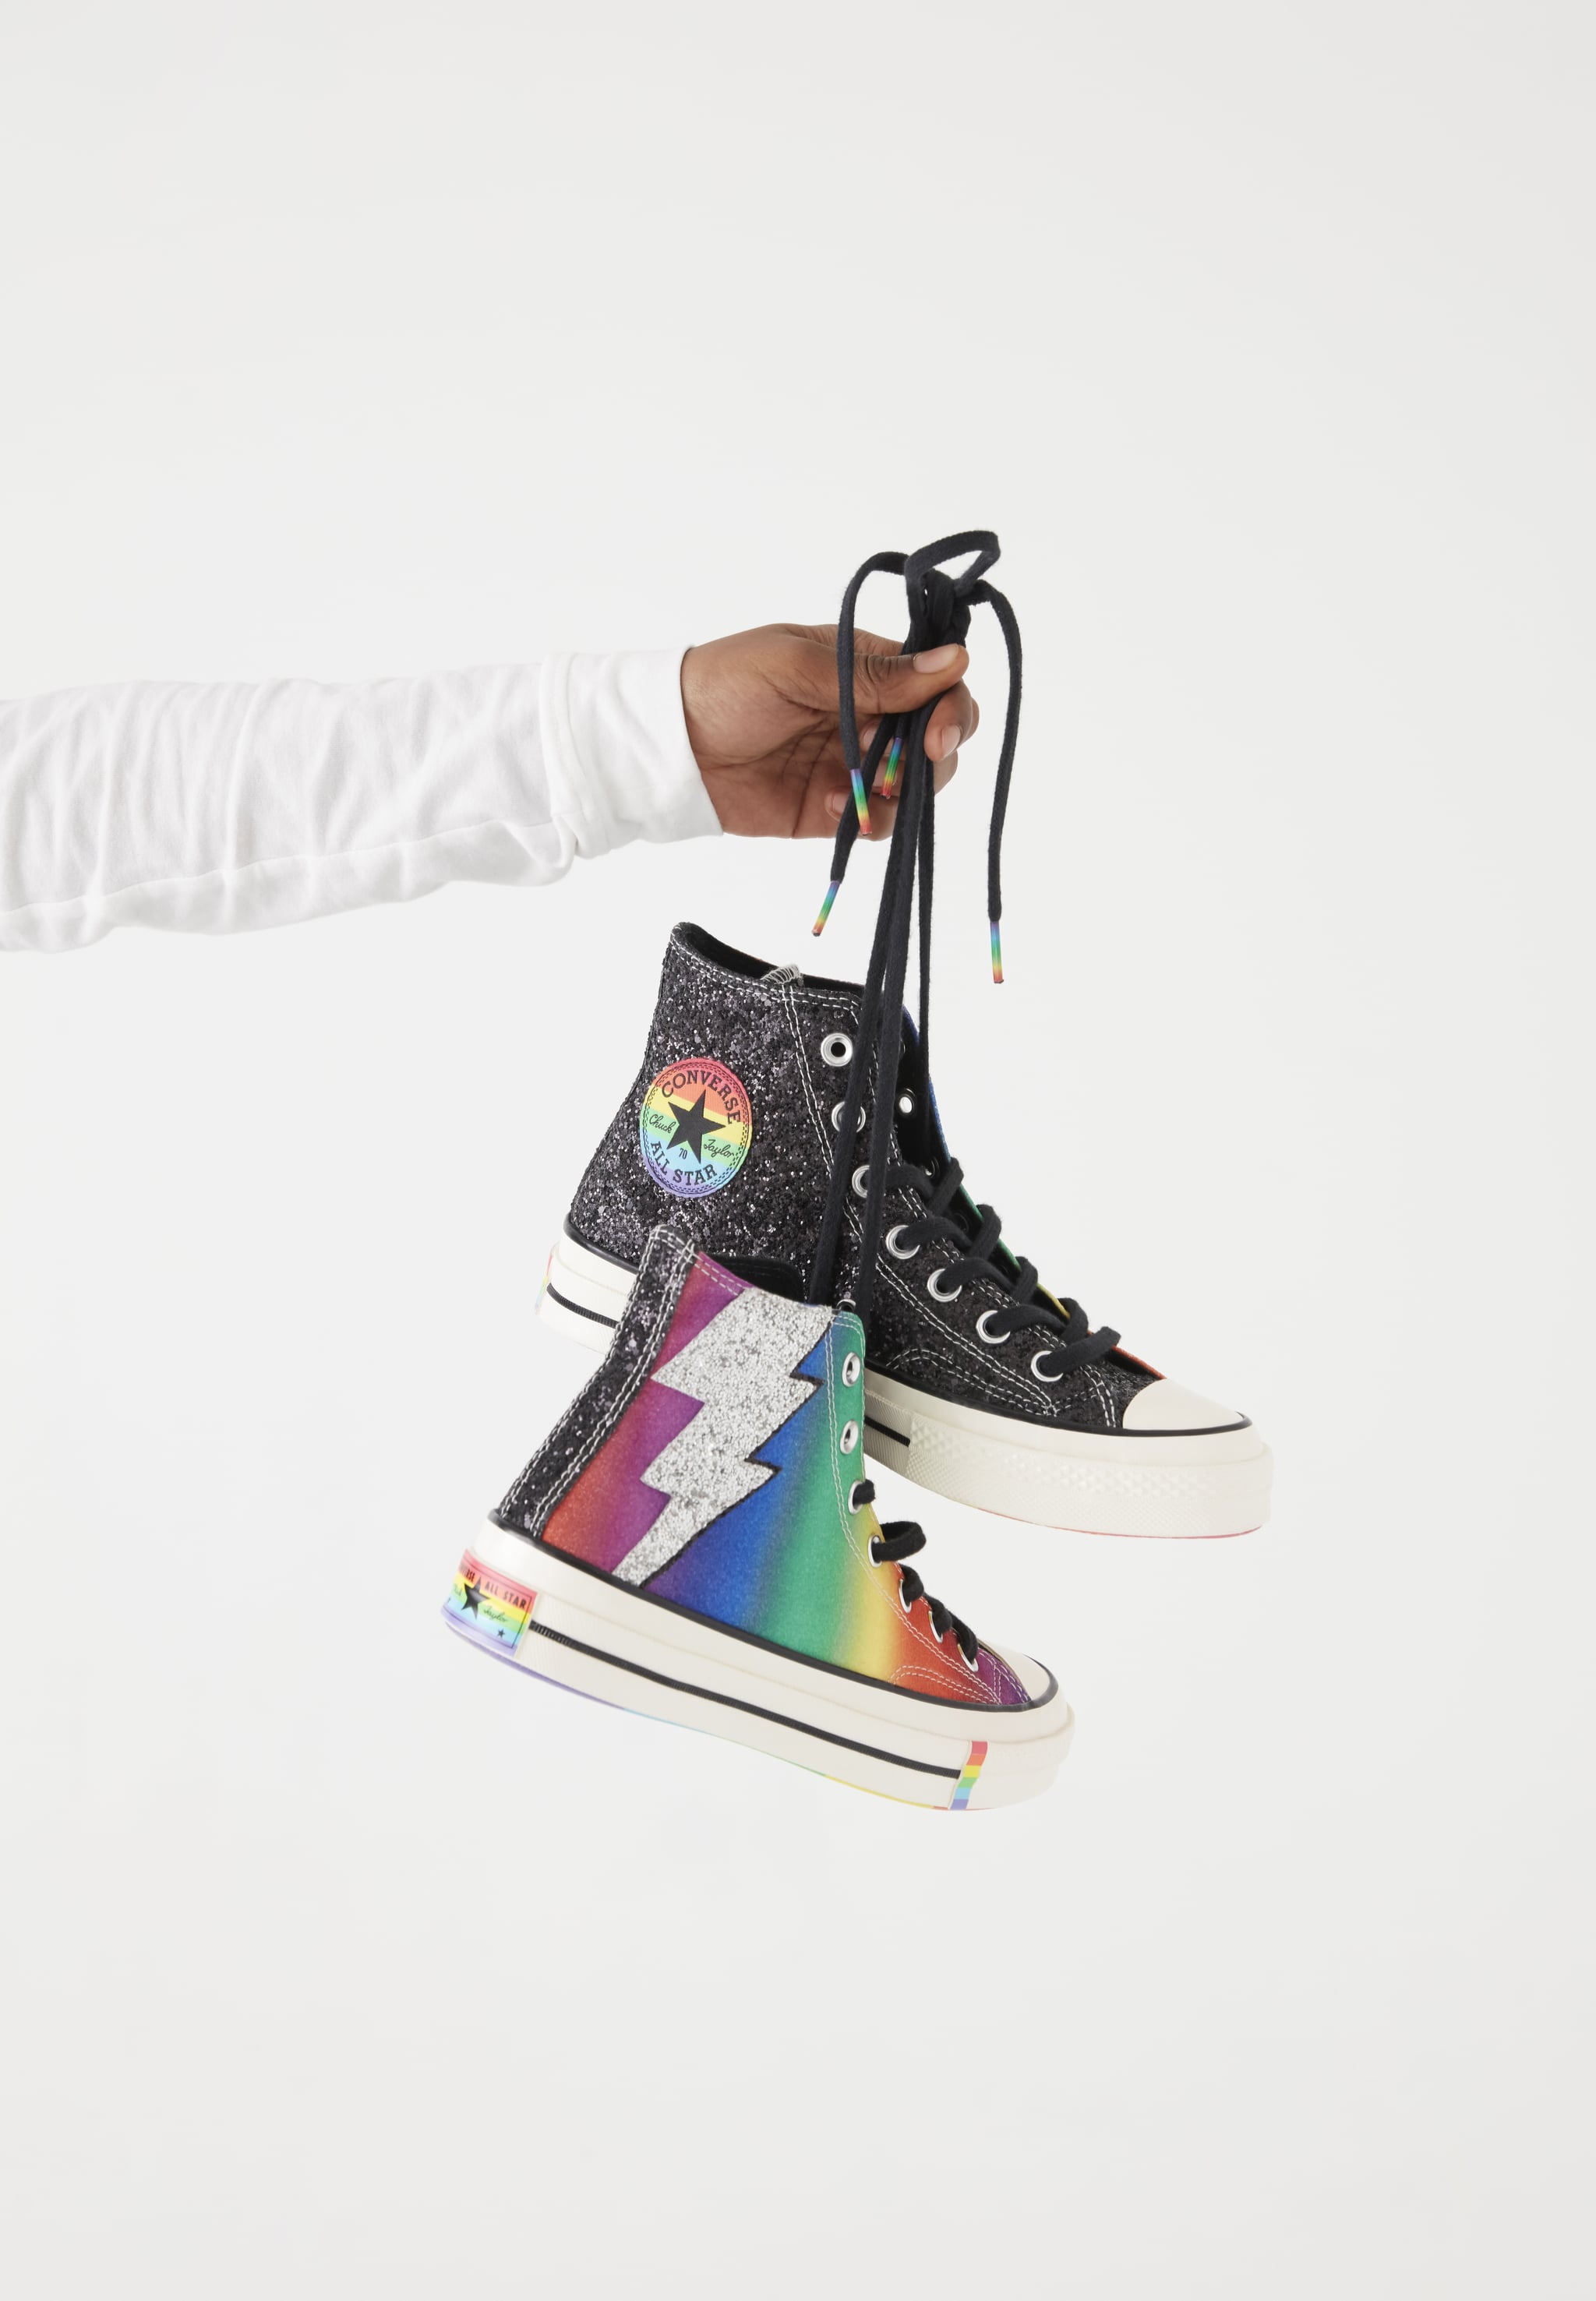 converse pride 2019 shoes